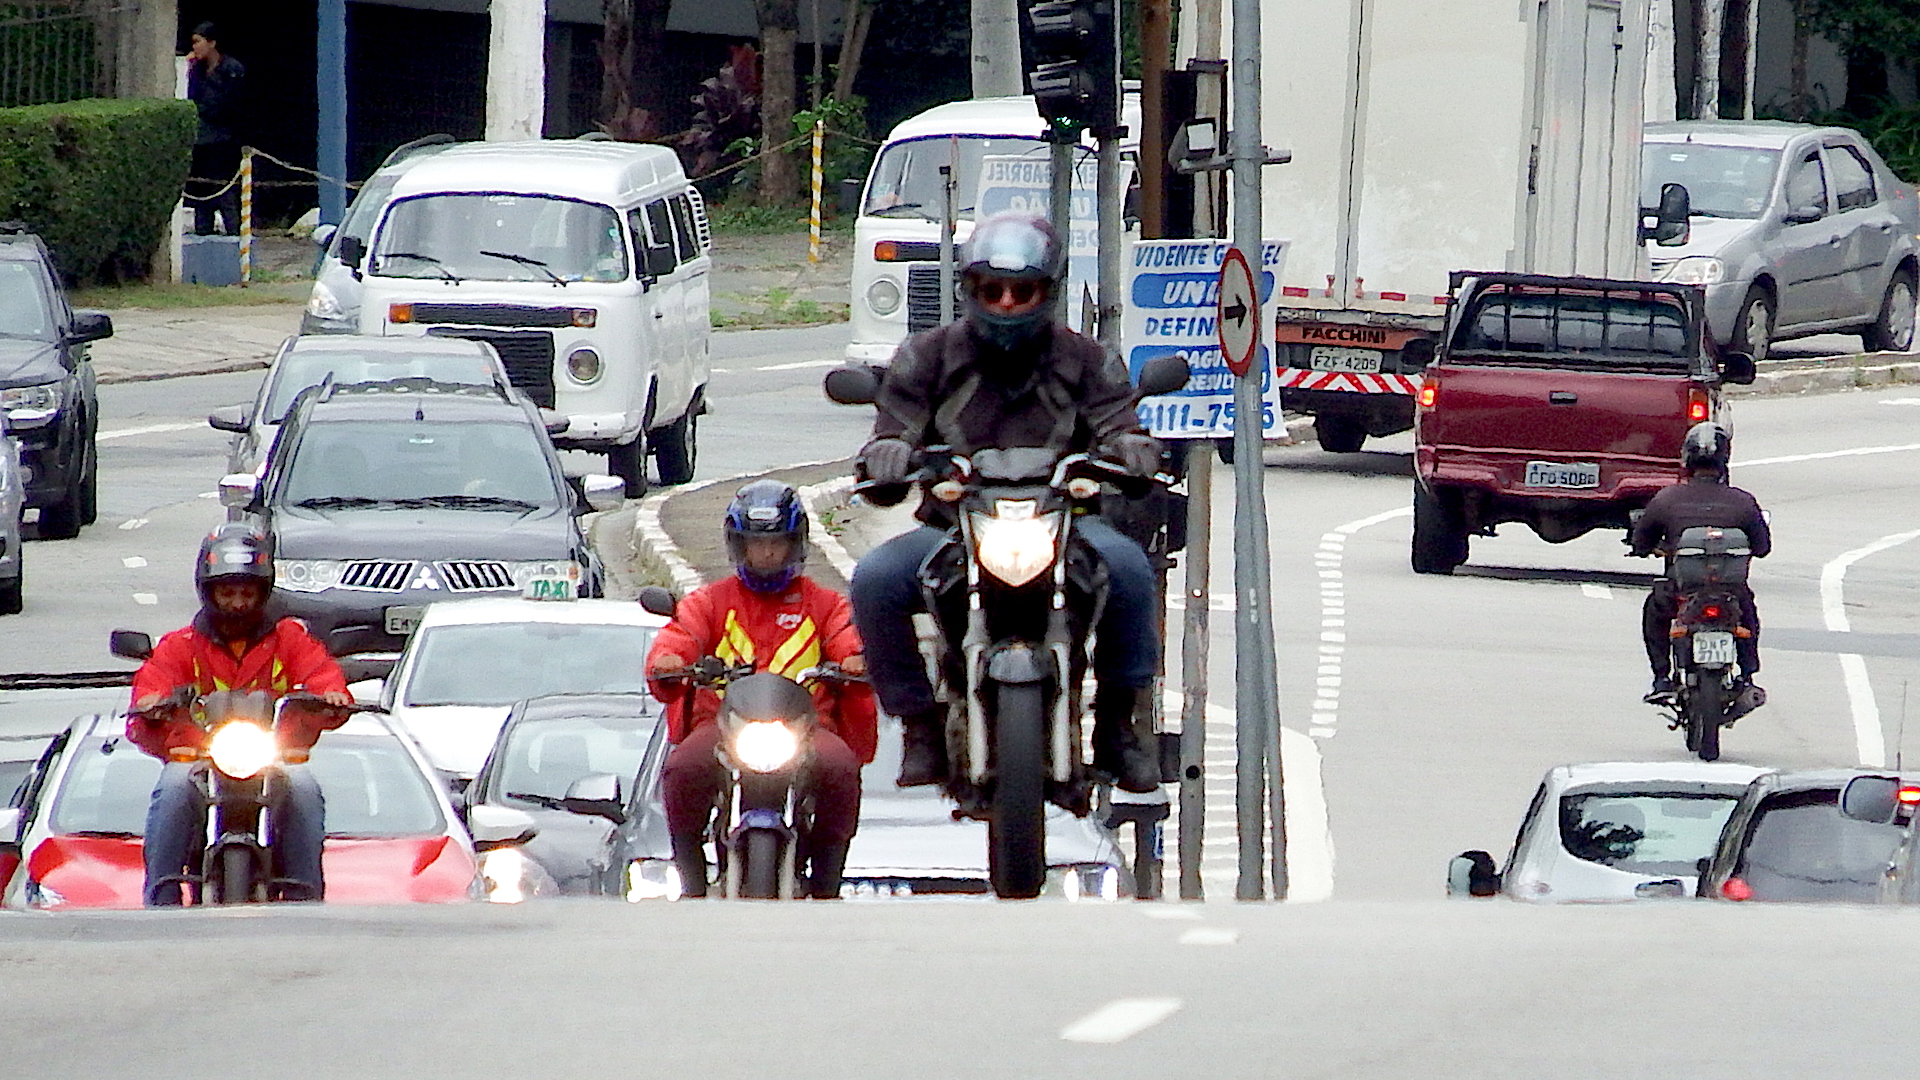 Motos andando em rua movimentada